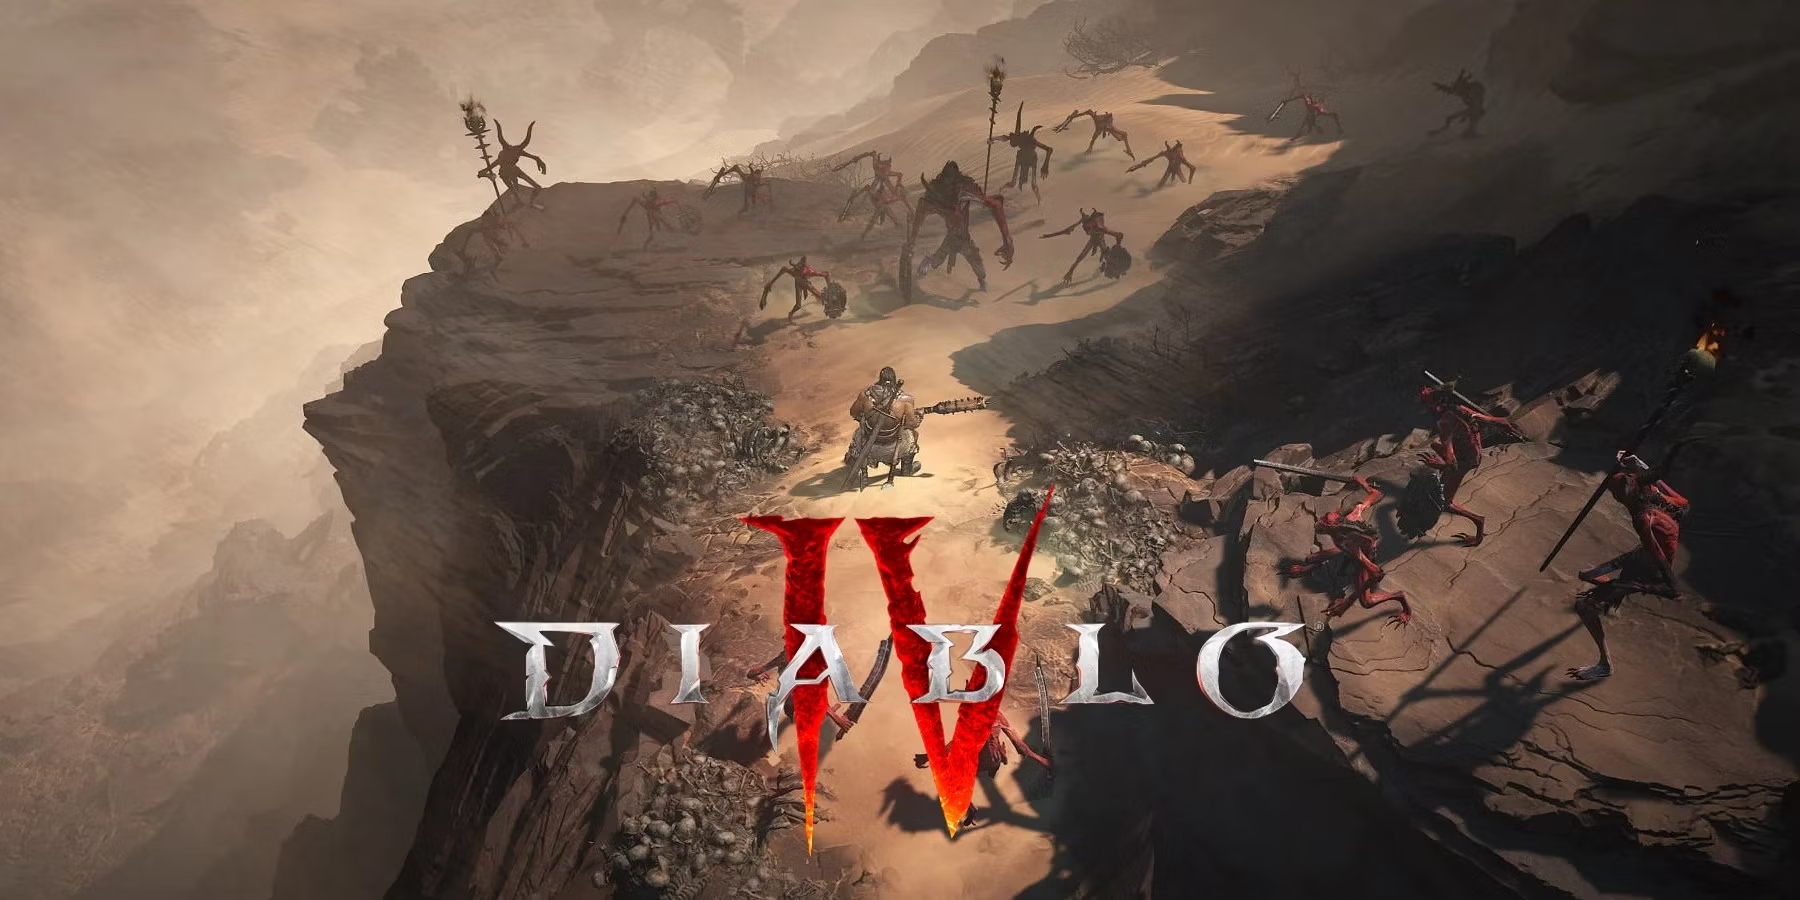 Blizzard opublikował aktualizację 1.1.0c do Diablo IV, która naprawia błąd interfejsu użytkownika prowadzący do aktywacji przepustki bojowej premium